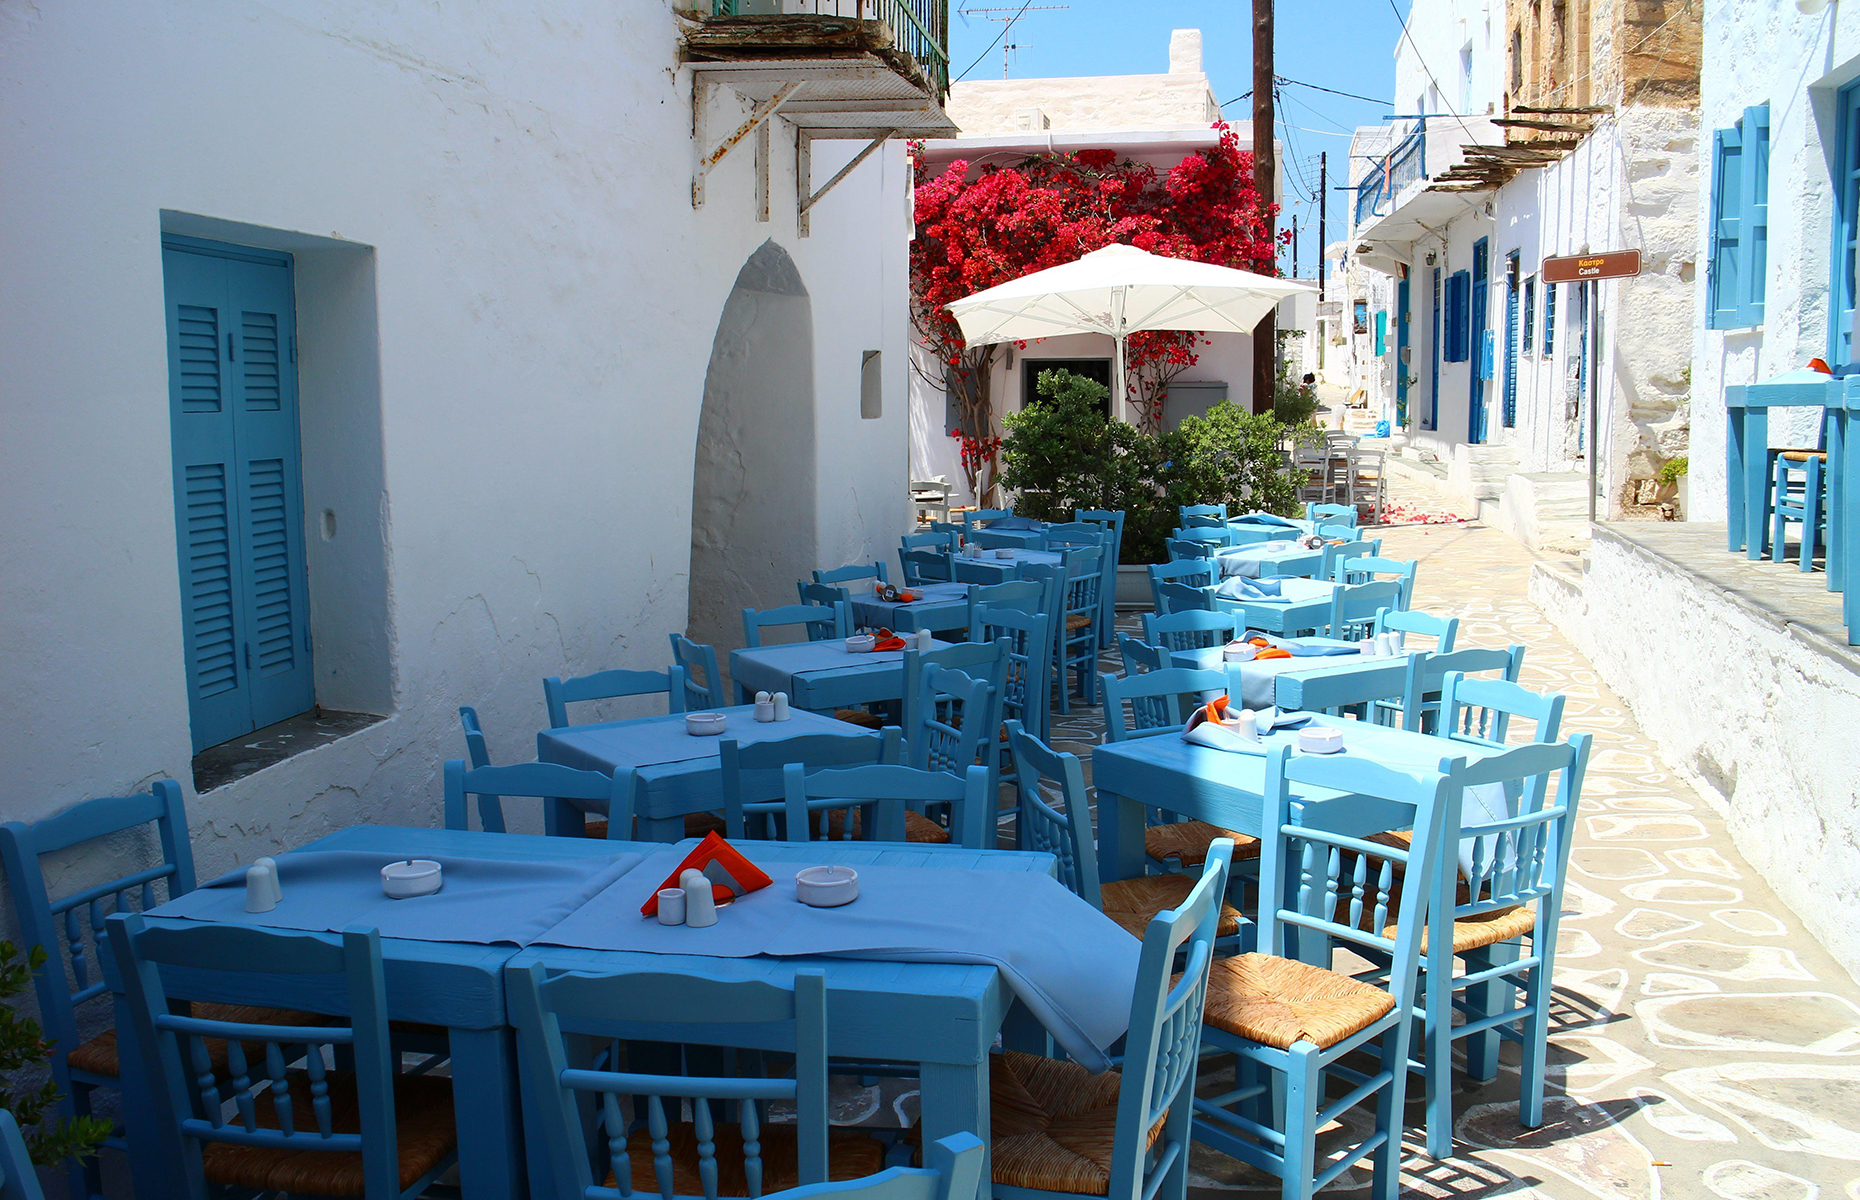 Kimolos, Greece. (Image: Desislava Lyungova/Shutterstock)